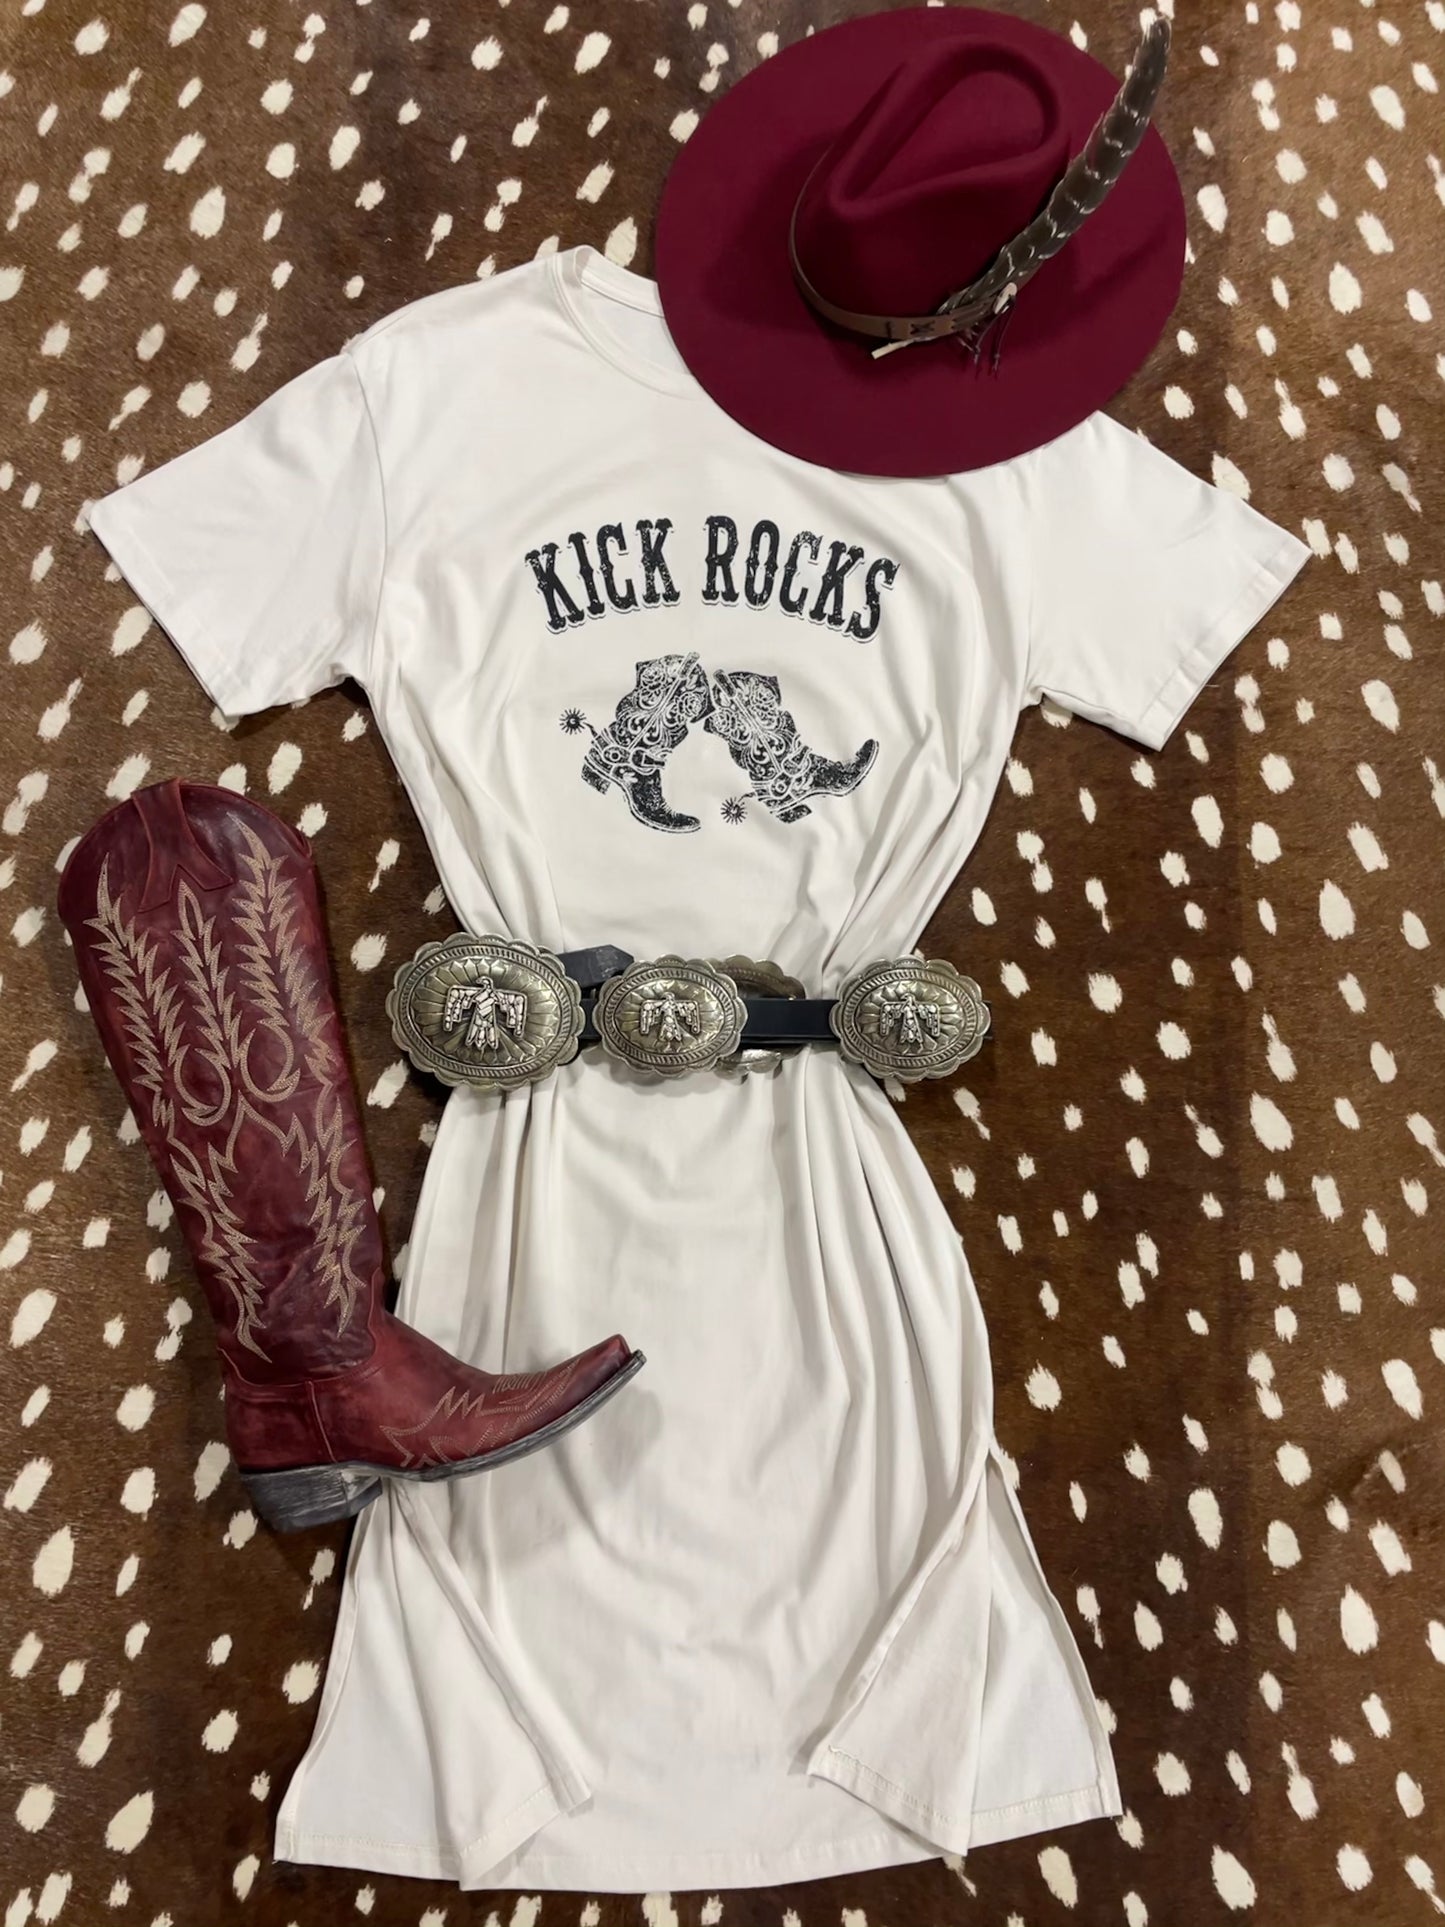 Kick Rocks T-Shirt Dress